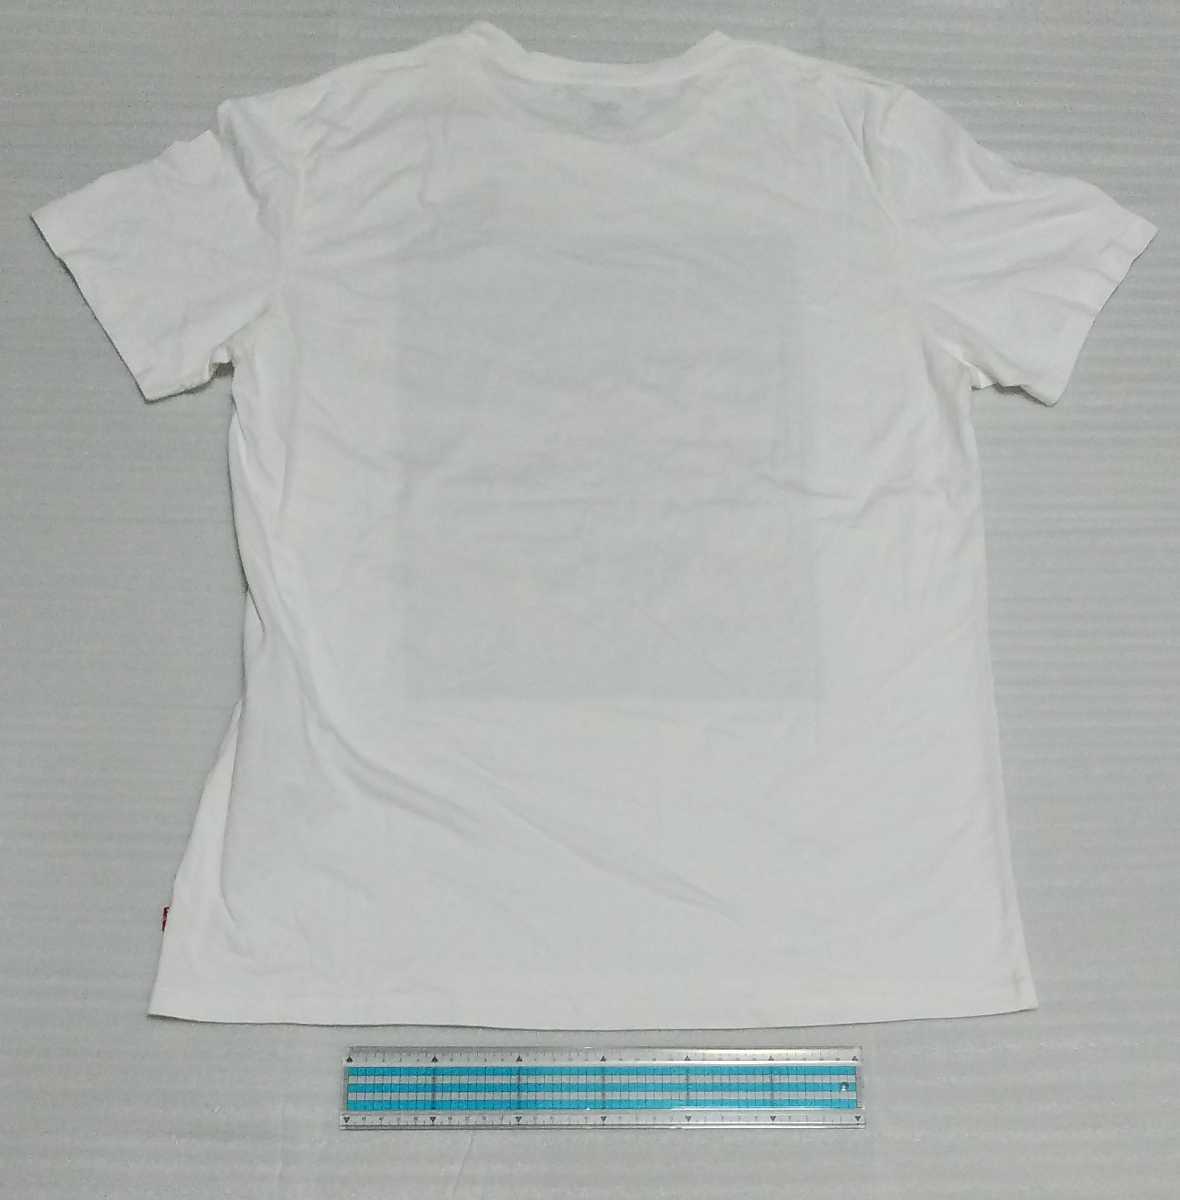 未使用 LEVI'S LEVIS リーバイス 半袖Tシャツ ネオン写真グラフィック スポーツ ウェア ホワイト白プリント サイズ L ジャパンXL 224910493_背面です。